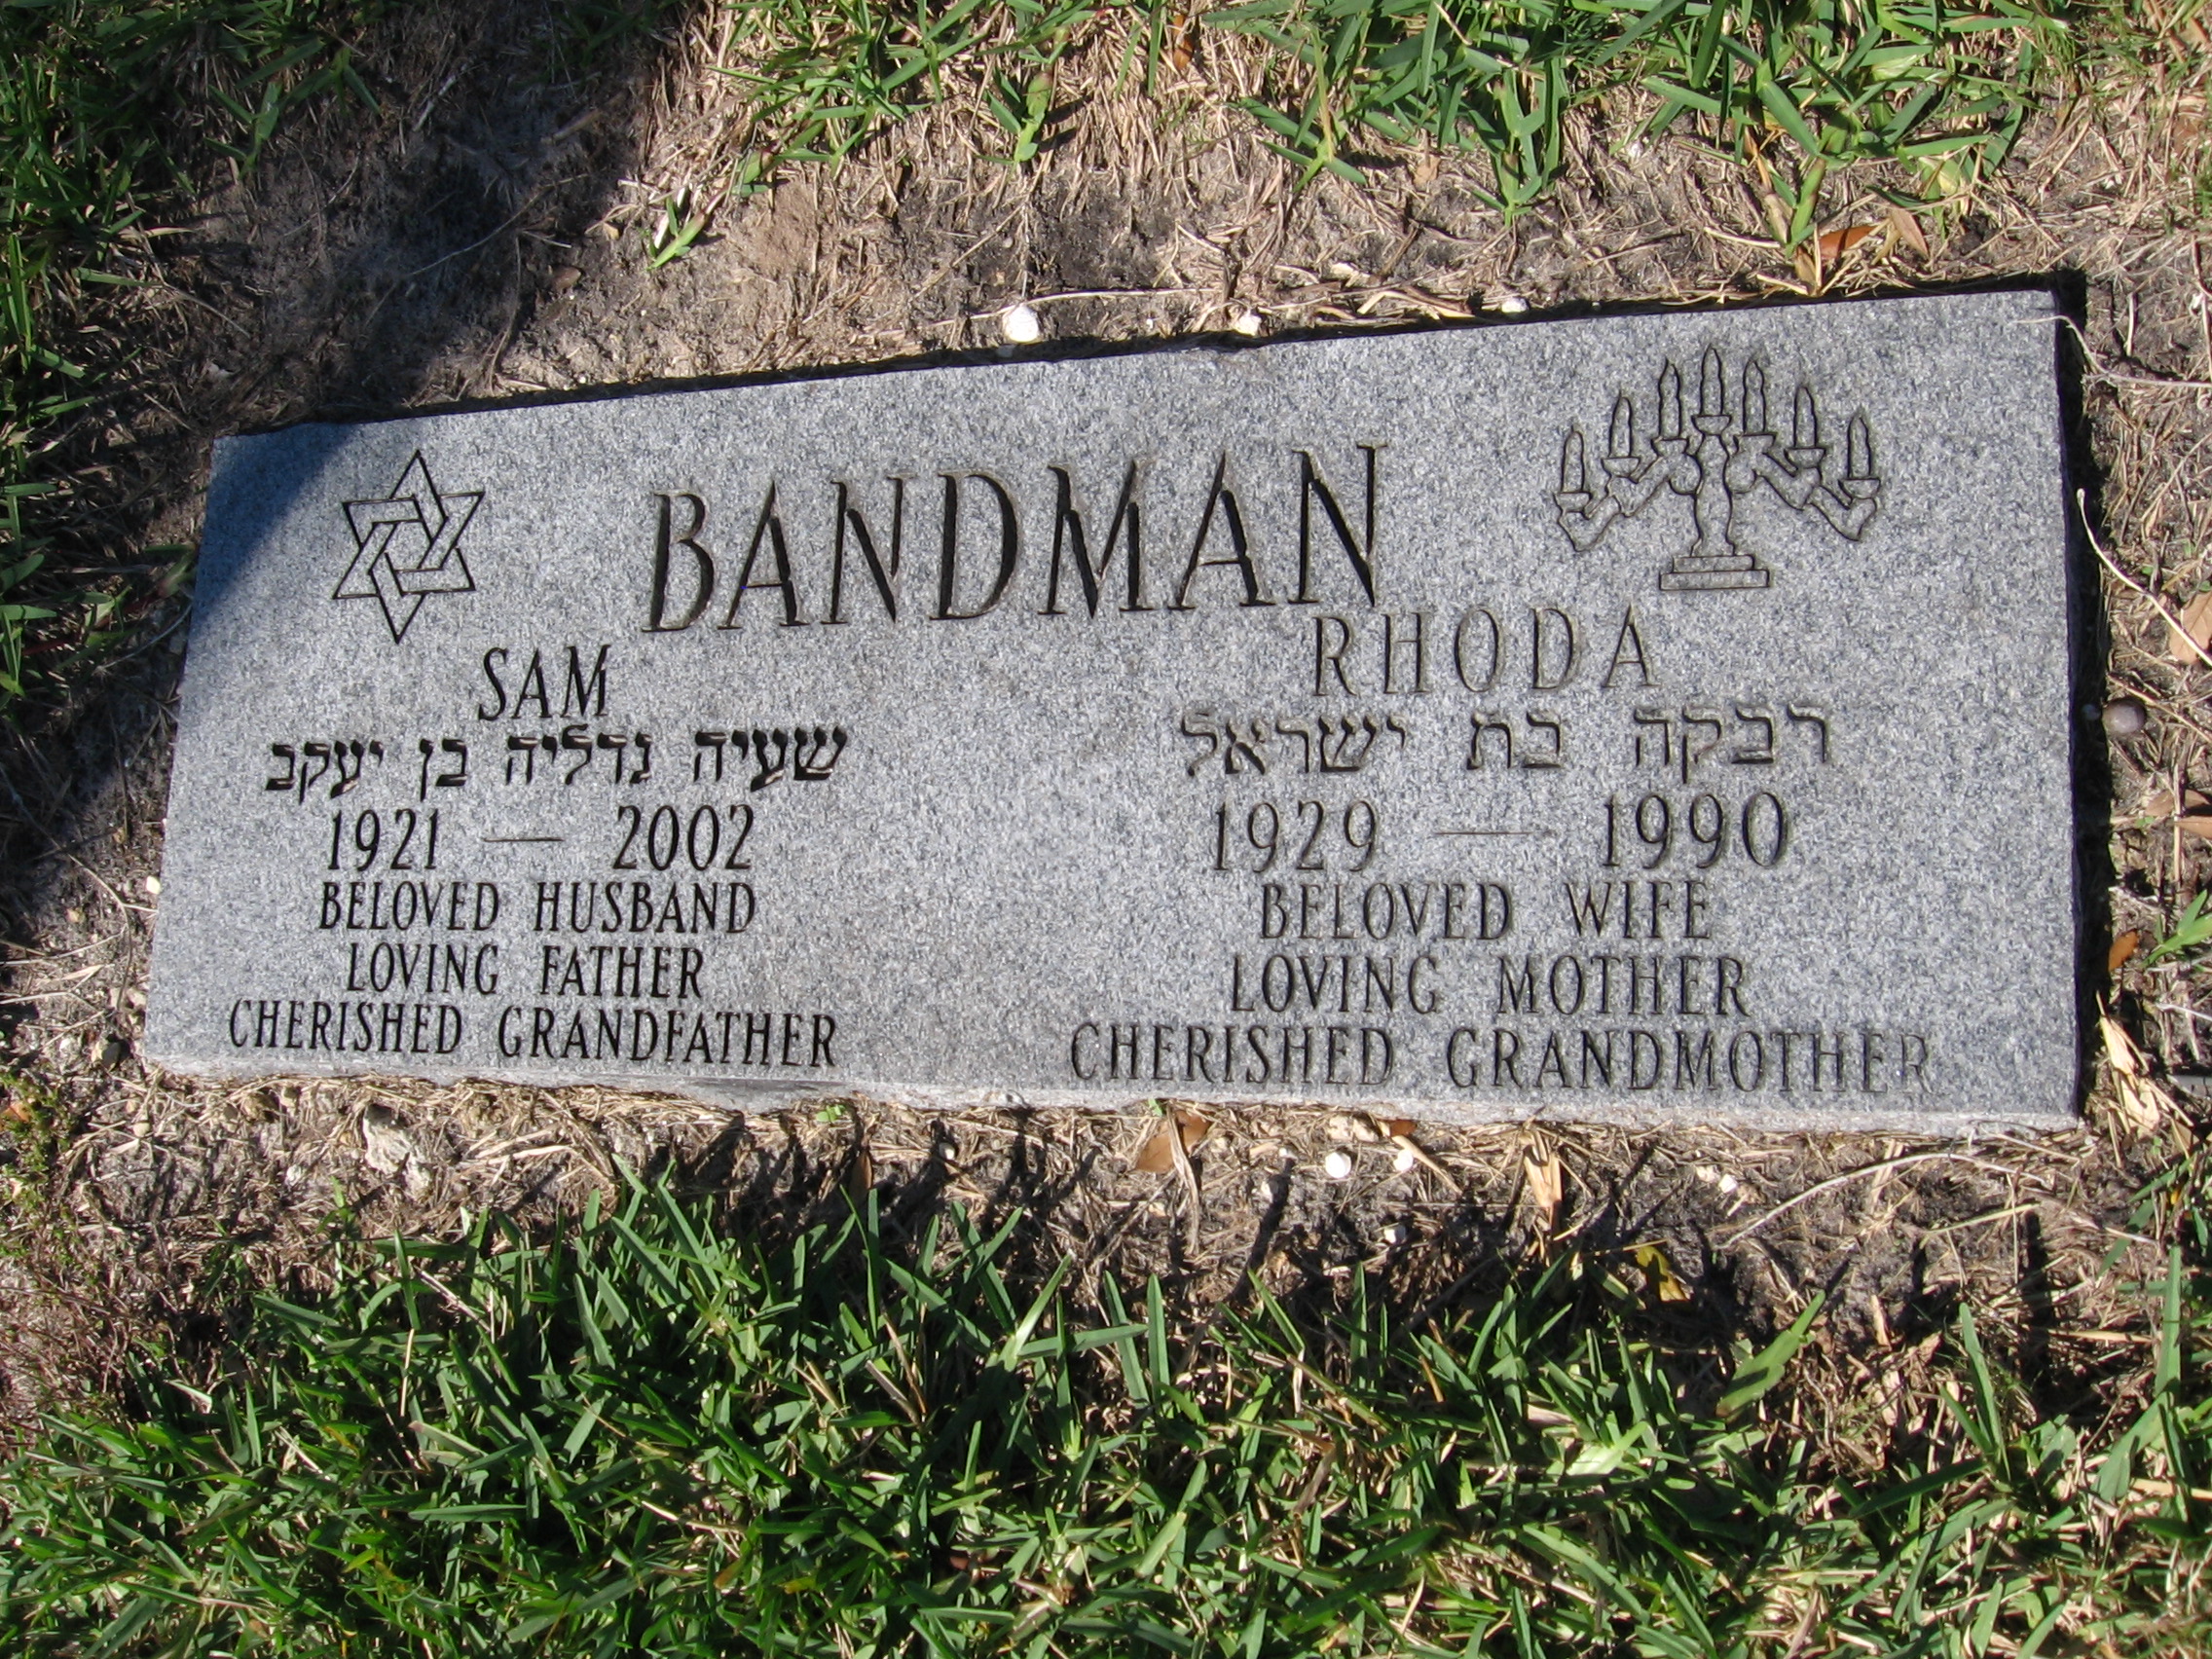 Sam Bandman